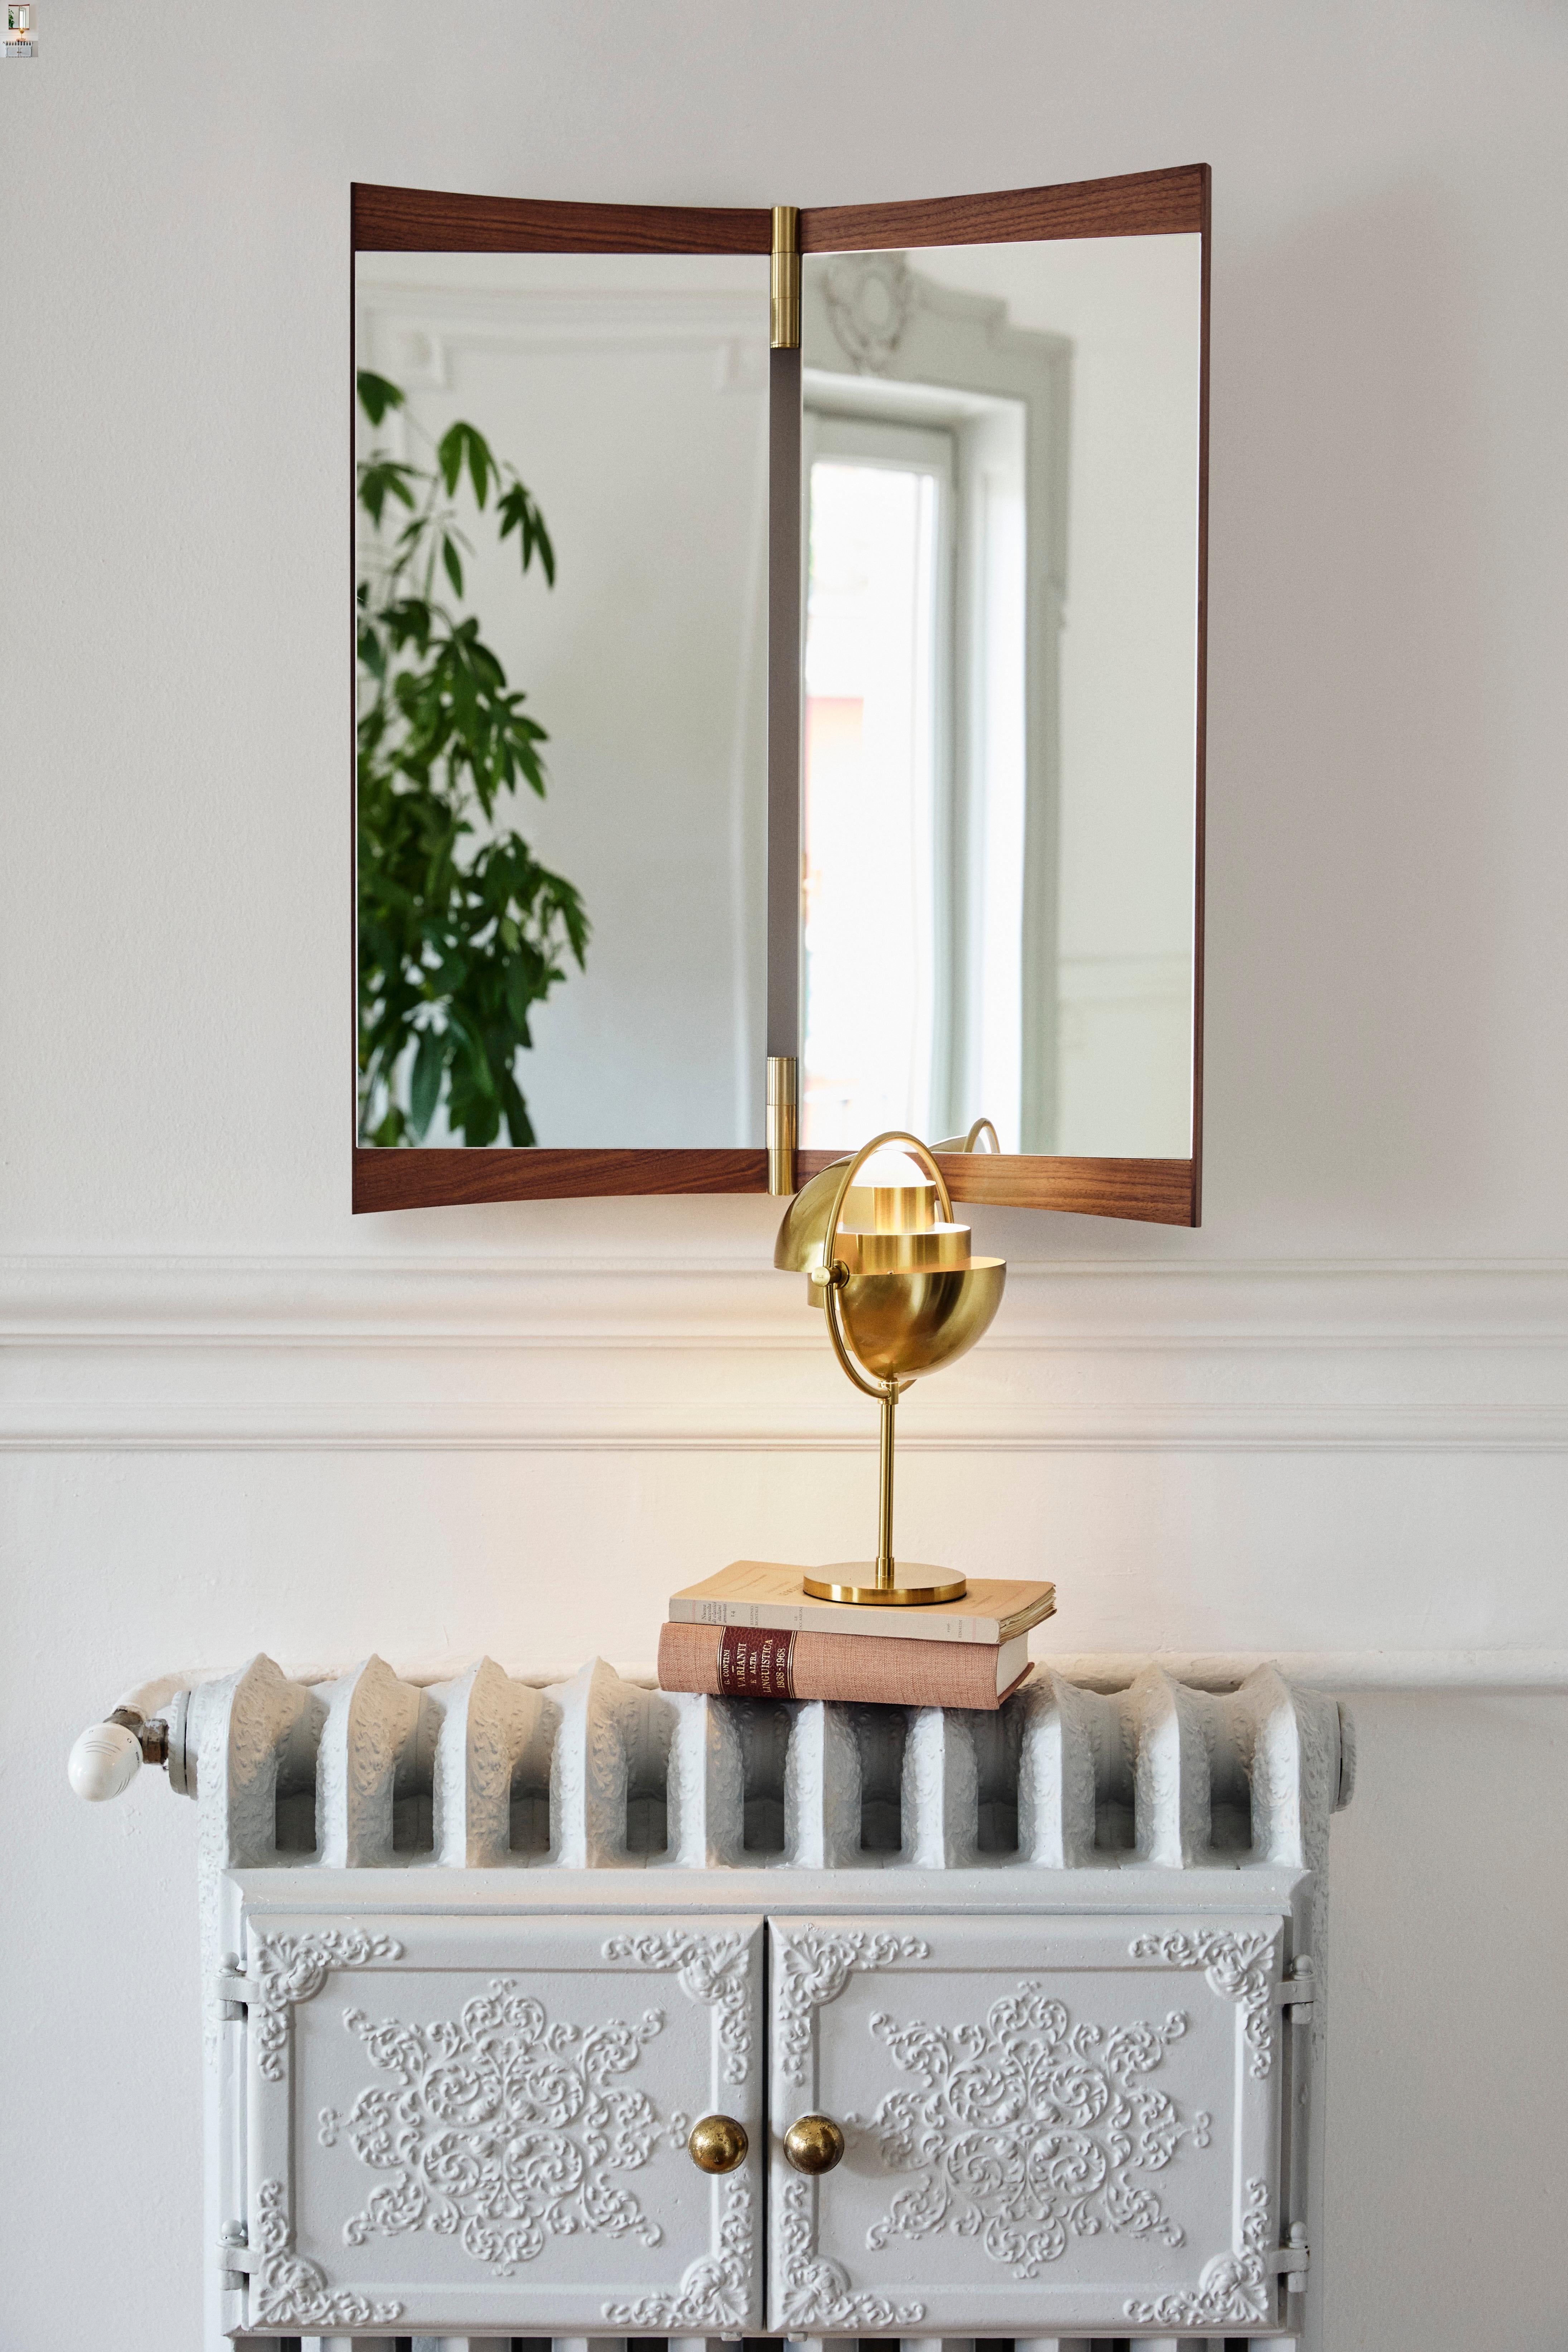 Miroir de courtoisie à deux panneaux pour Gubi.

Cette nouvelle collection de miroirs muraux réinvente ingénieusement le miroir de courtoisie pour les intérieurs contemporains. Exécuté en noyer et en laiton, le miroir Vanity incarne la capacité de